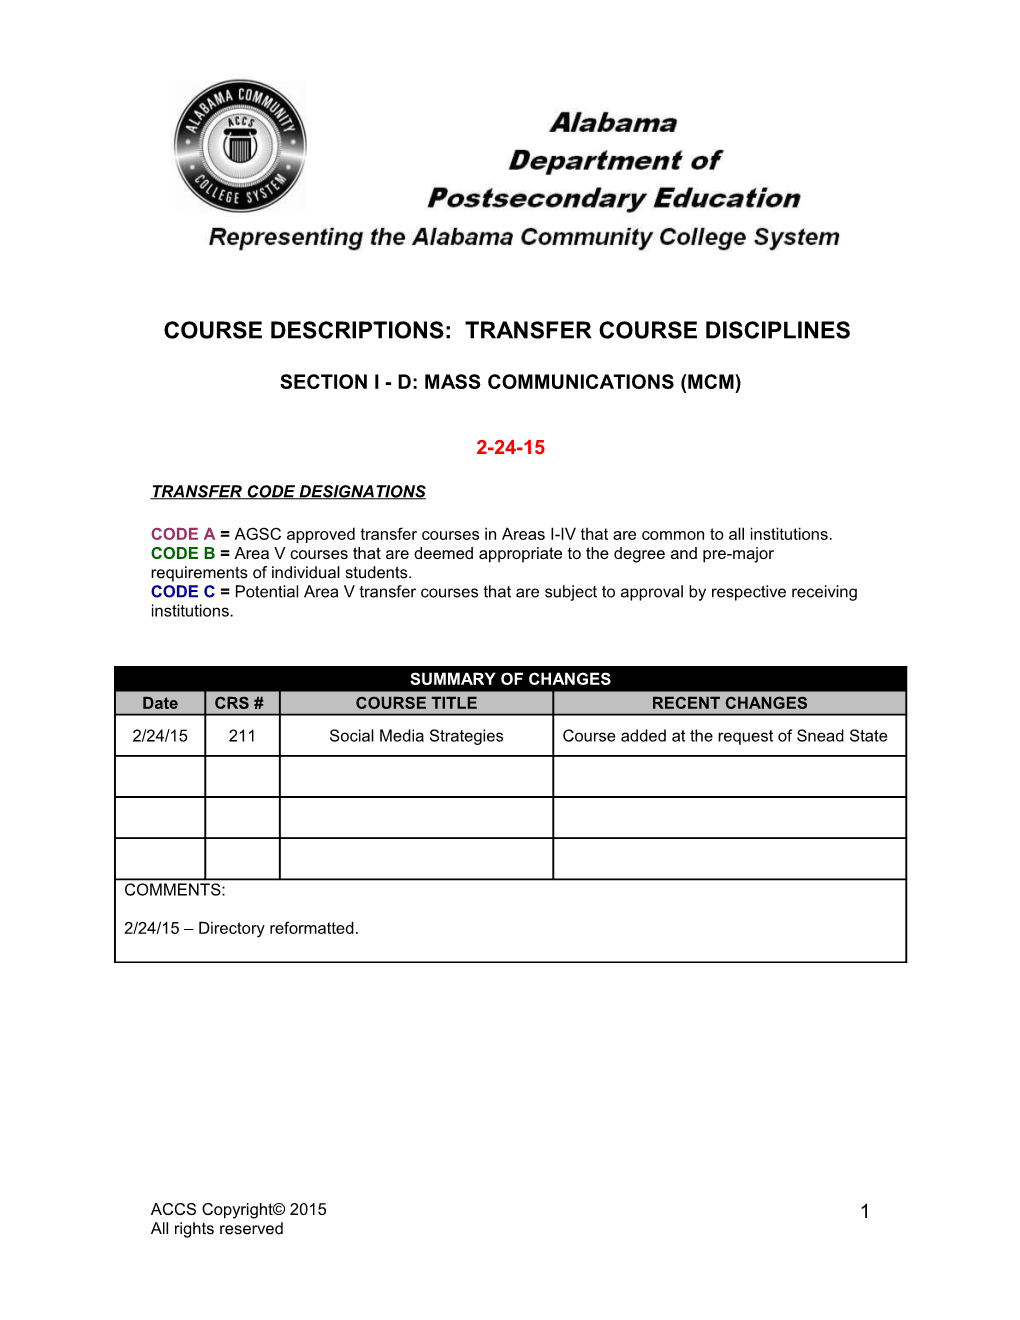 Course Descriptions: Transfer Course Disciplines s2